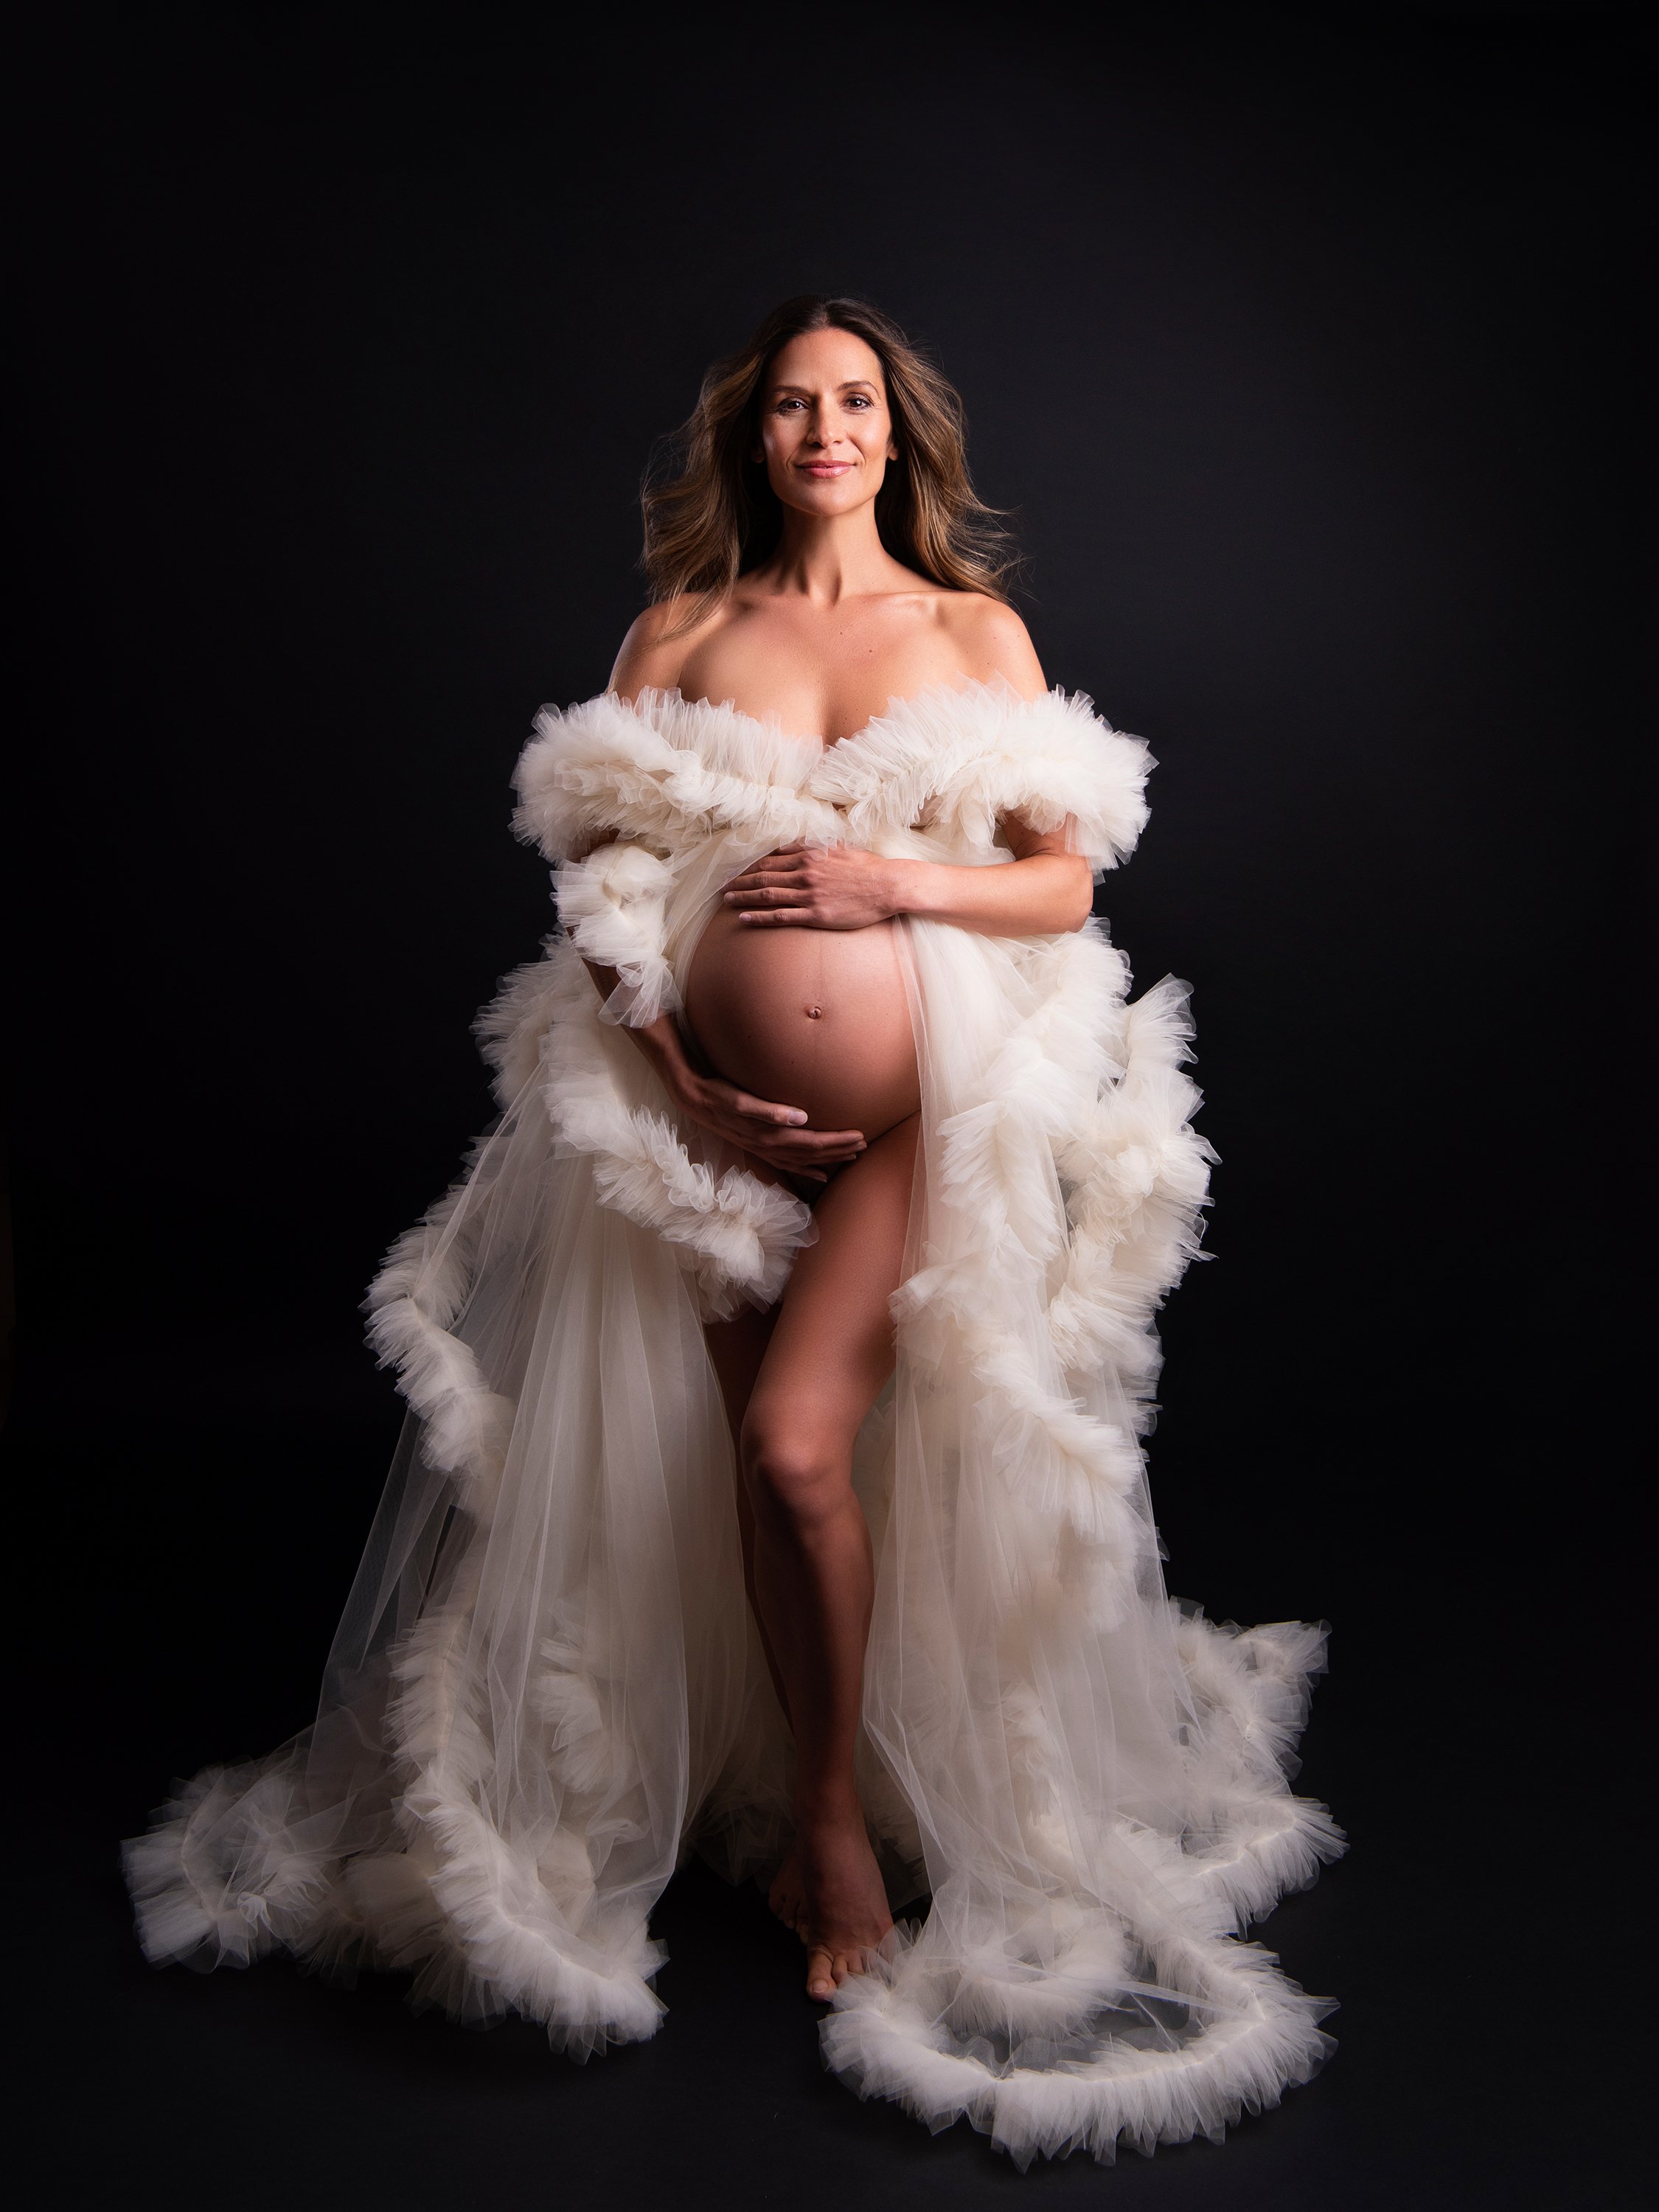 Amanda-Byram-maternity-photoshoot.jpg